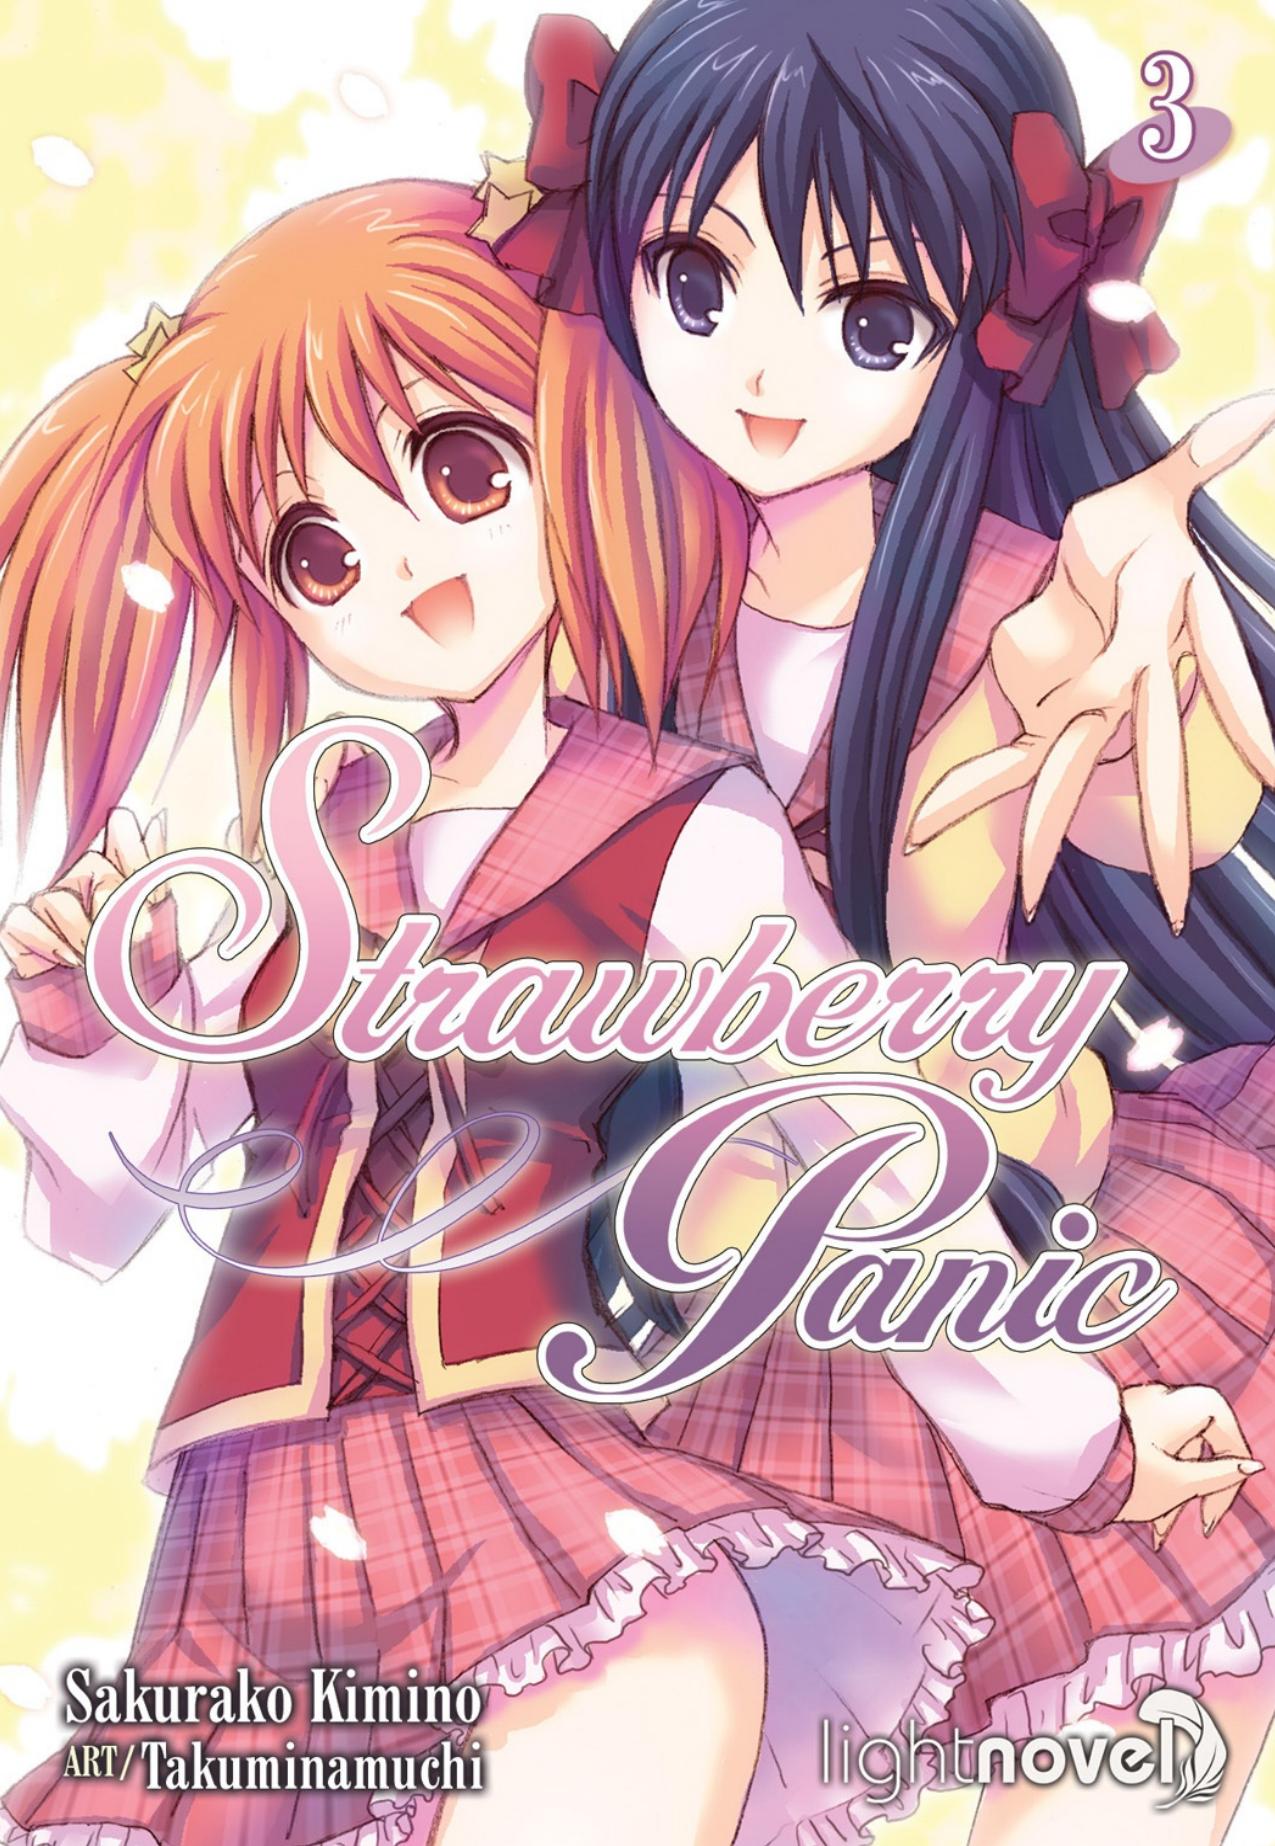 Strawberry Panic: Volume 3 by Sakurako Kimino